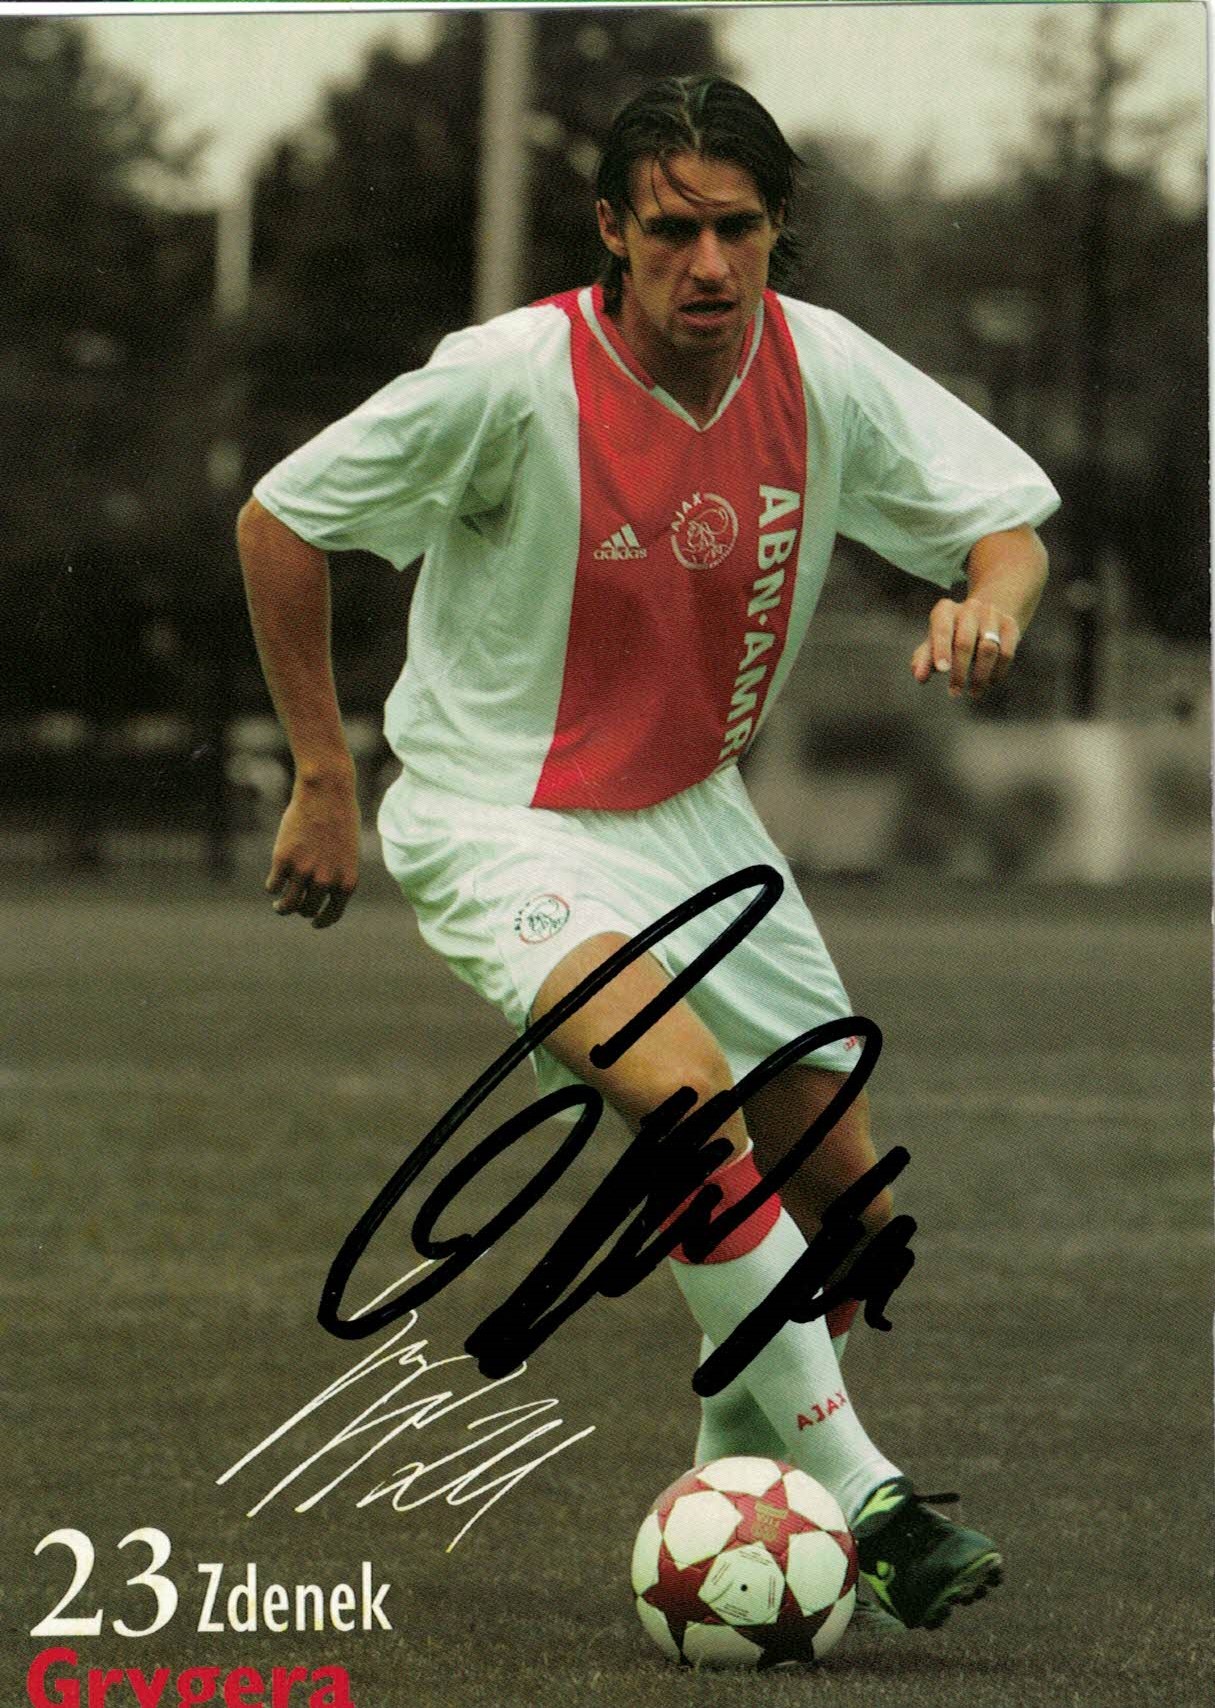 Zdenek Grygera Ajax Amsterdam 2004/05 Podpisova karta autogram